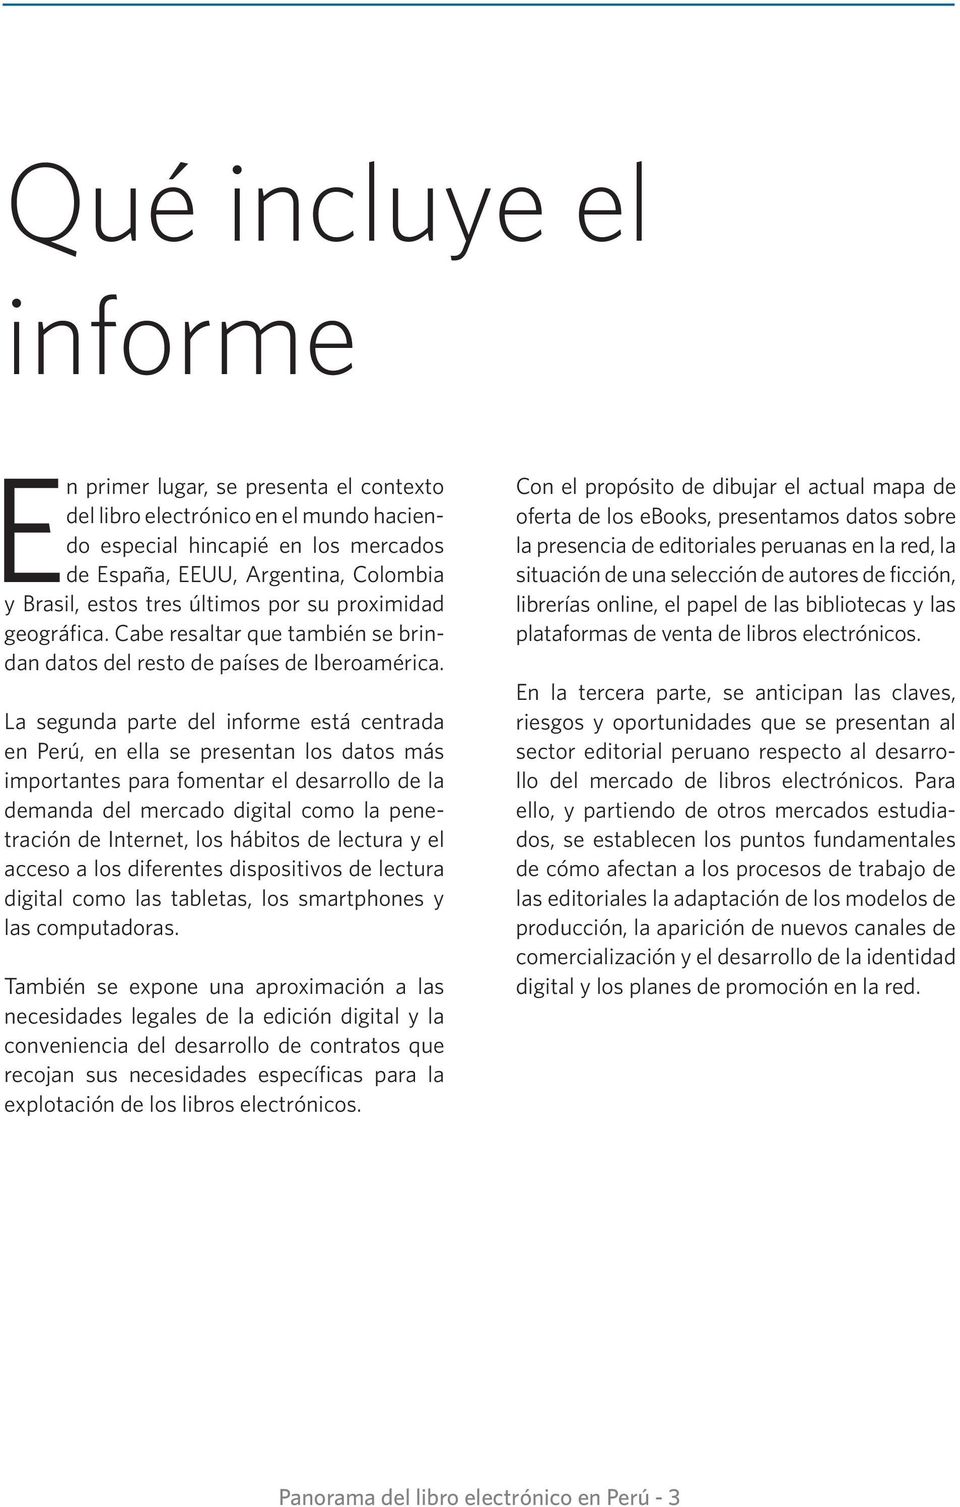 La segunda parte del informe está centrada en Perú, en ella se presentan los datos más importantes para fomentar el desarrollo de la demanda del mercado digital como la penetración de Internet, los